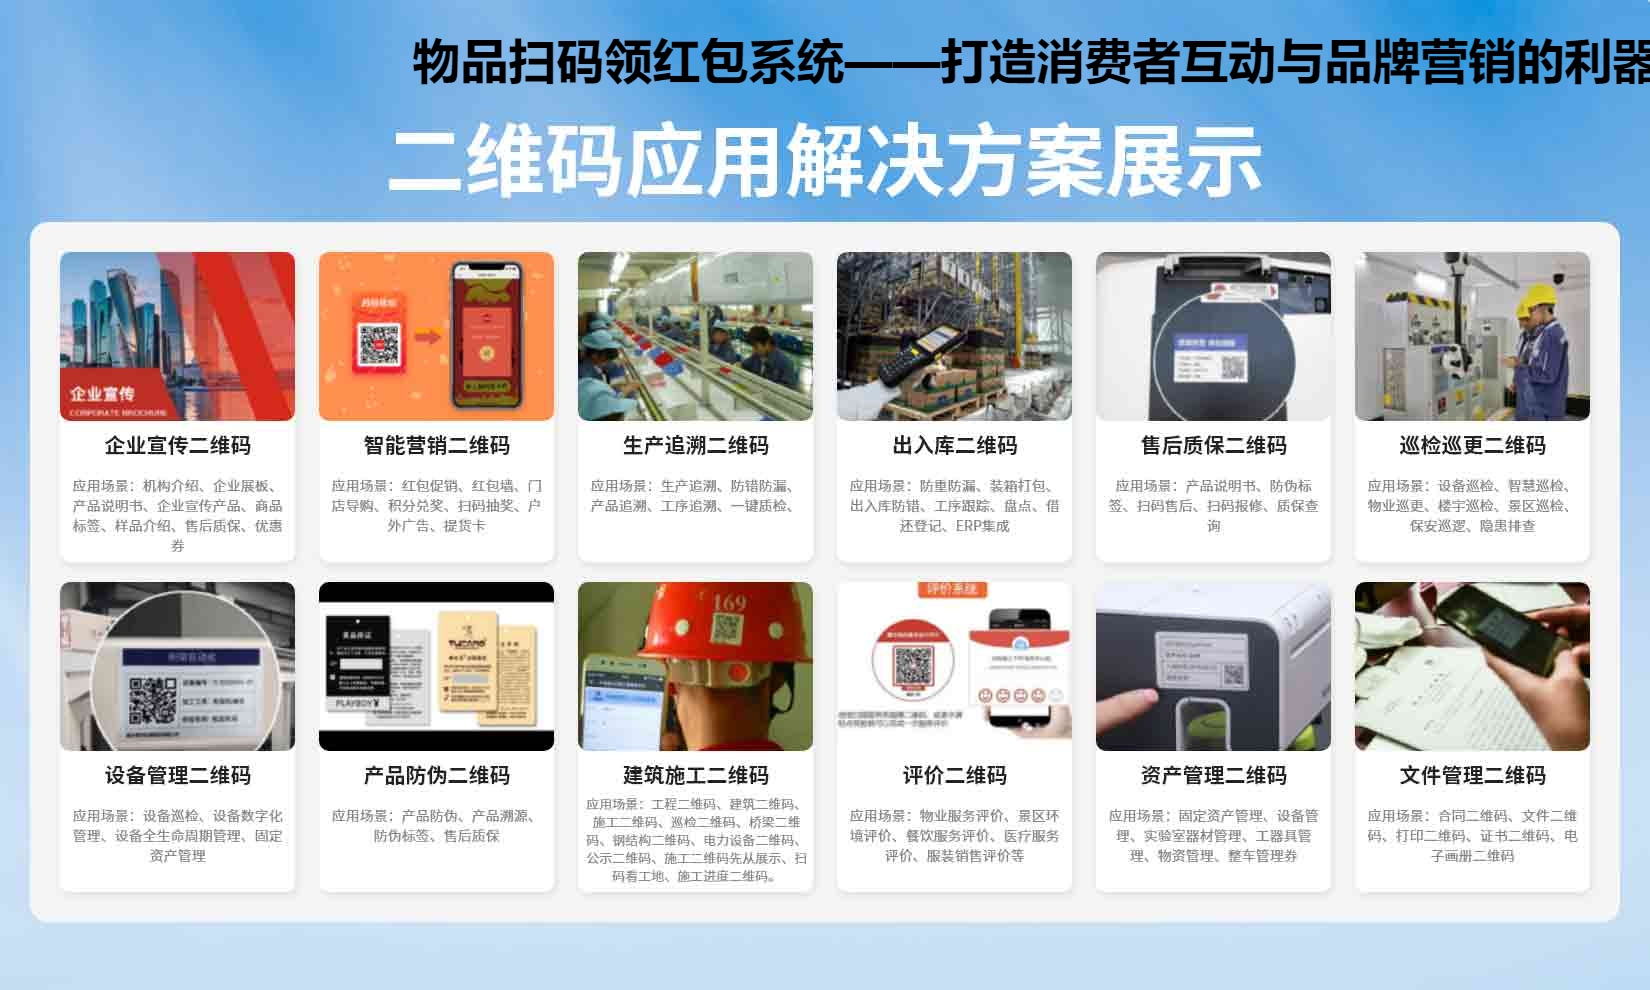 物品扫码领红包系统——打造消费者互动与品牌营销的利器